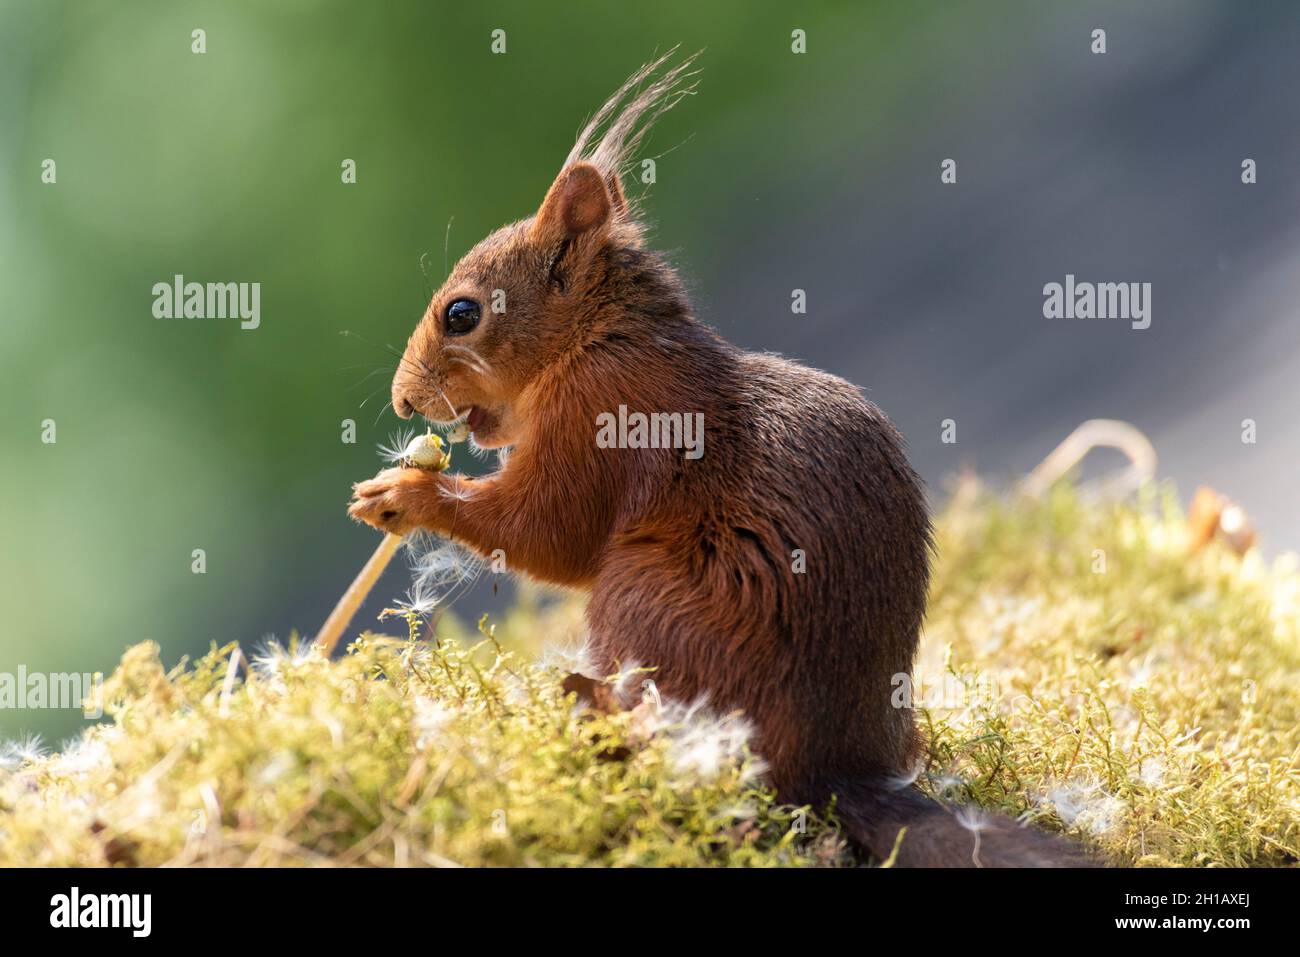 Eekhoorn; Red Squirrel; Sciurus vulgaris is eating a dandelion stem with seeds Stock Photo